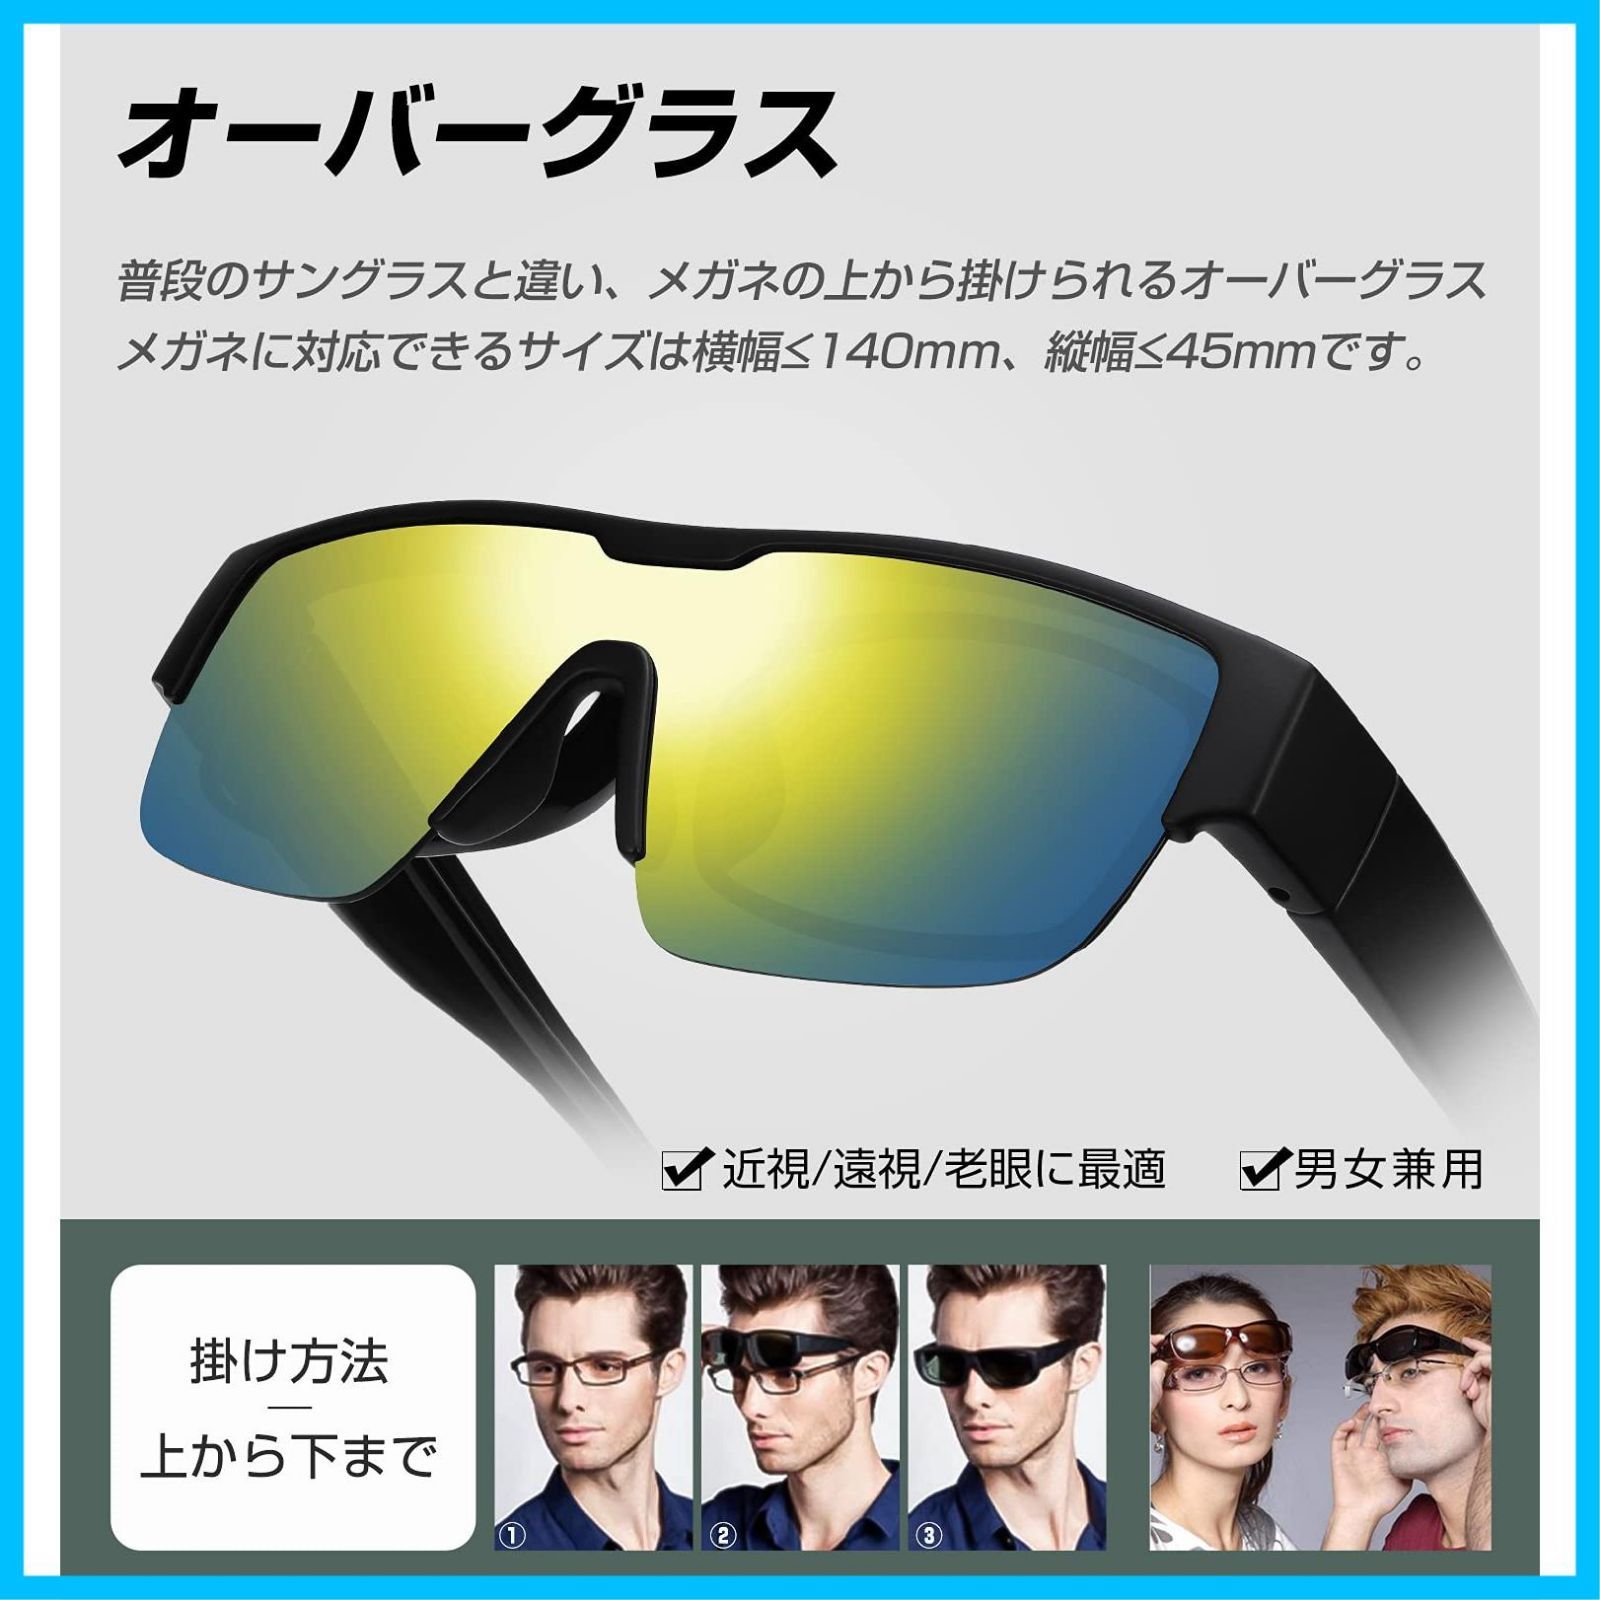 ziyue) バイク ゴーグル メガネ対応 バイク用ゴーグル 広い視野 UV